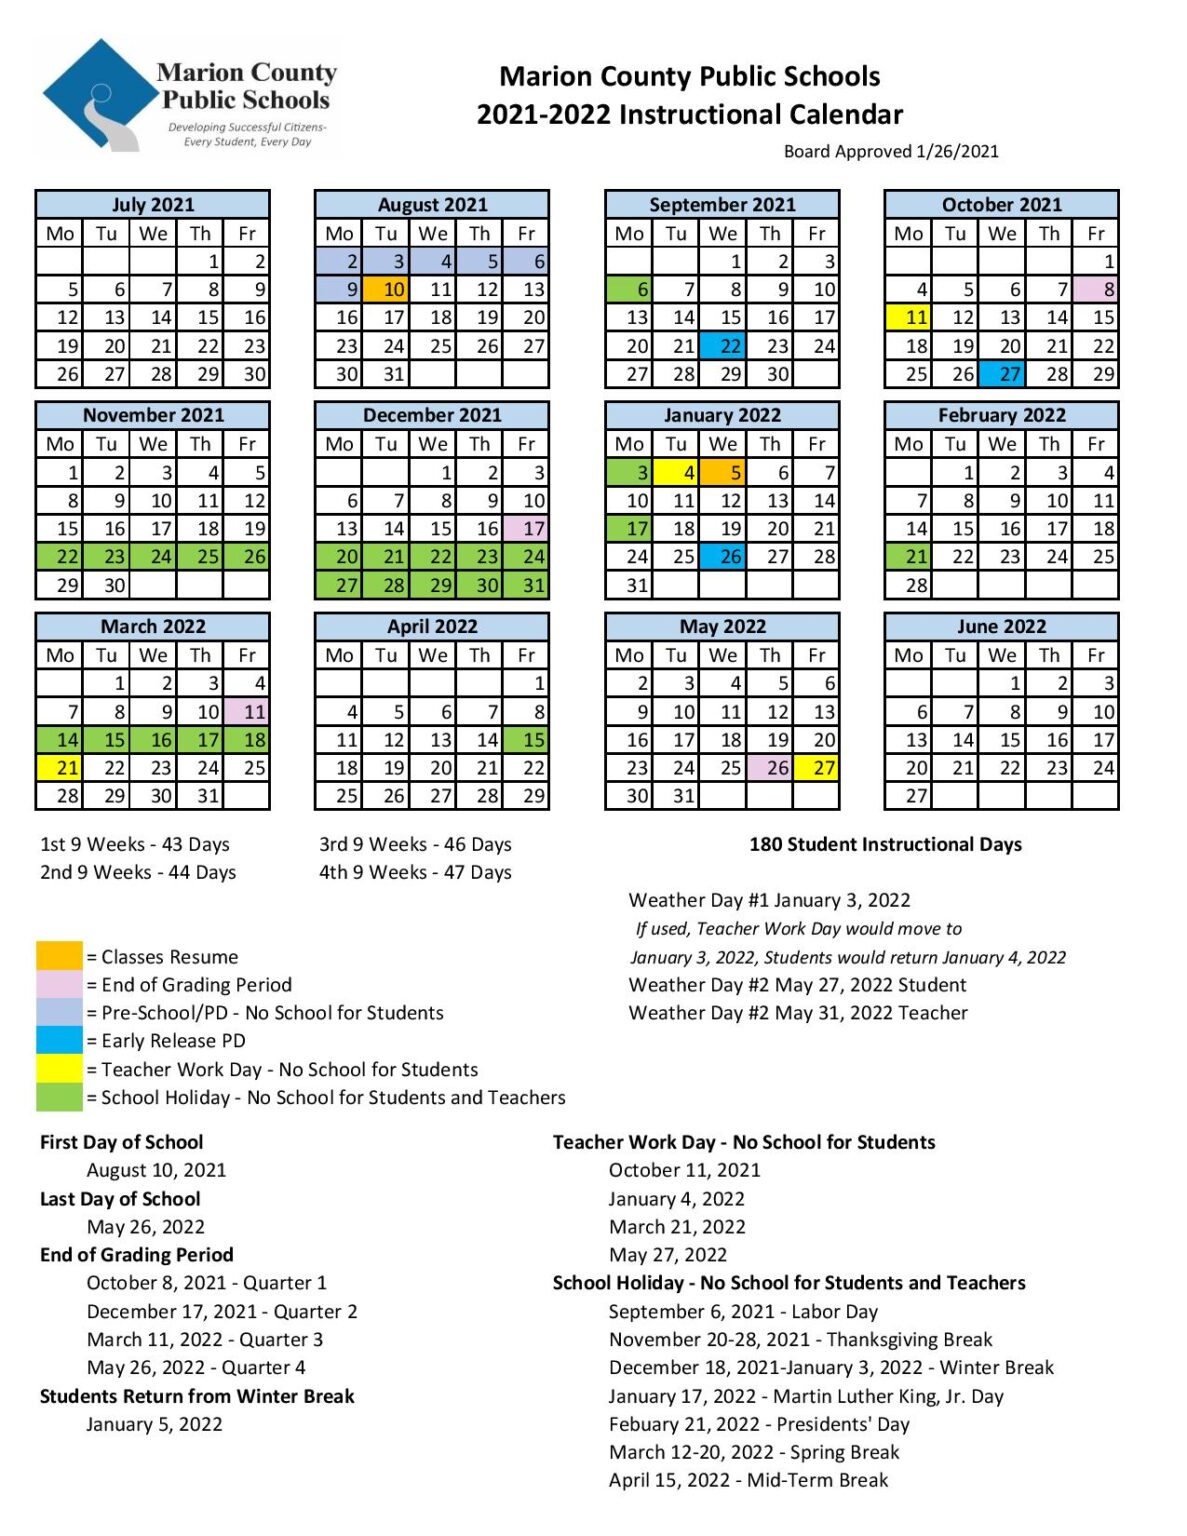 Marion County Public Schools Calendar 2021-2022